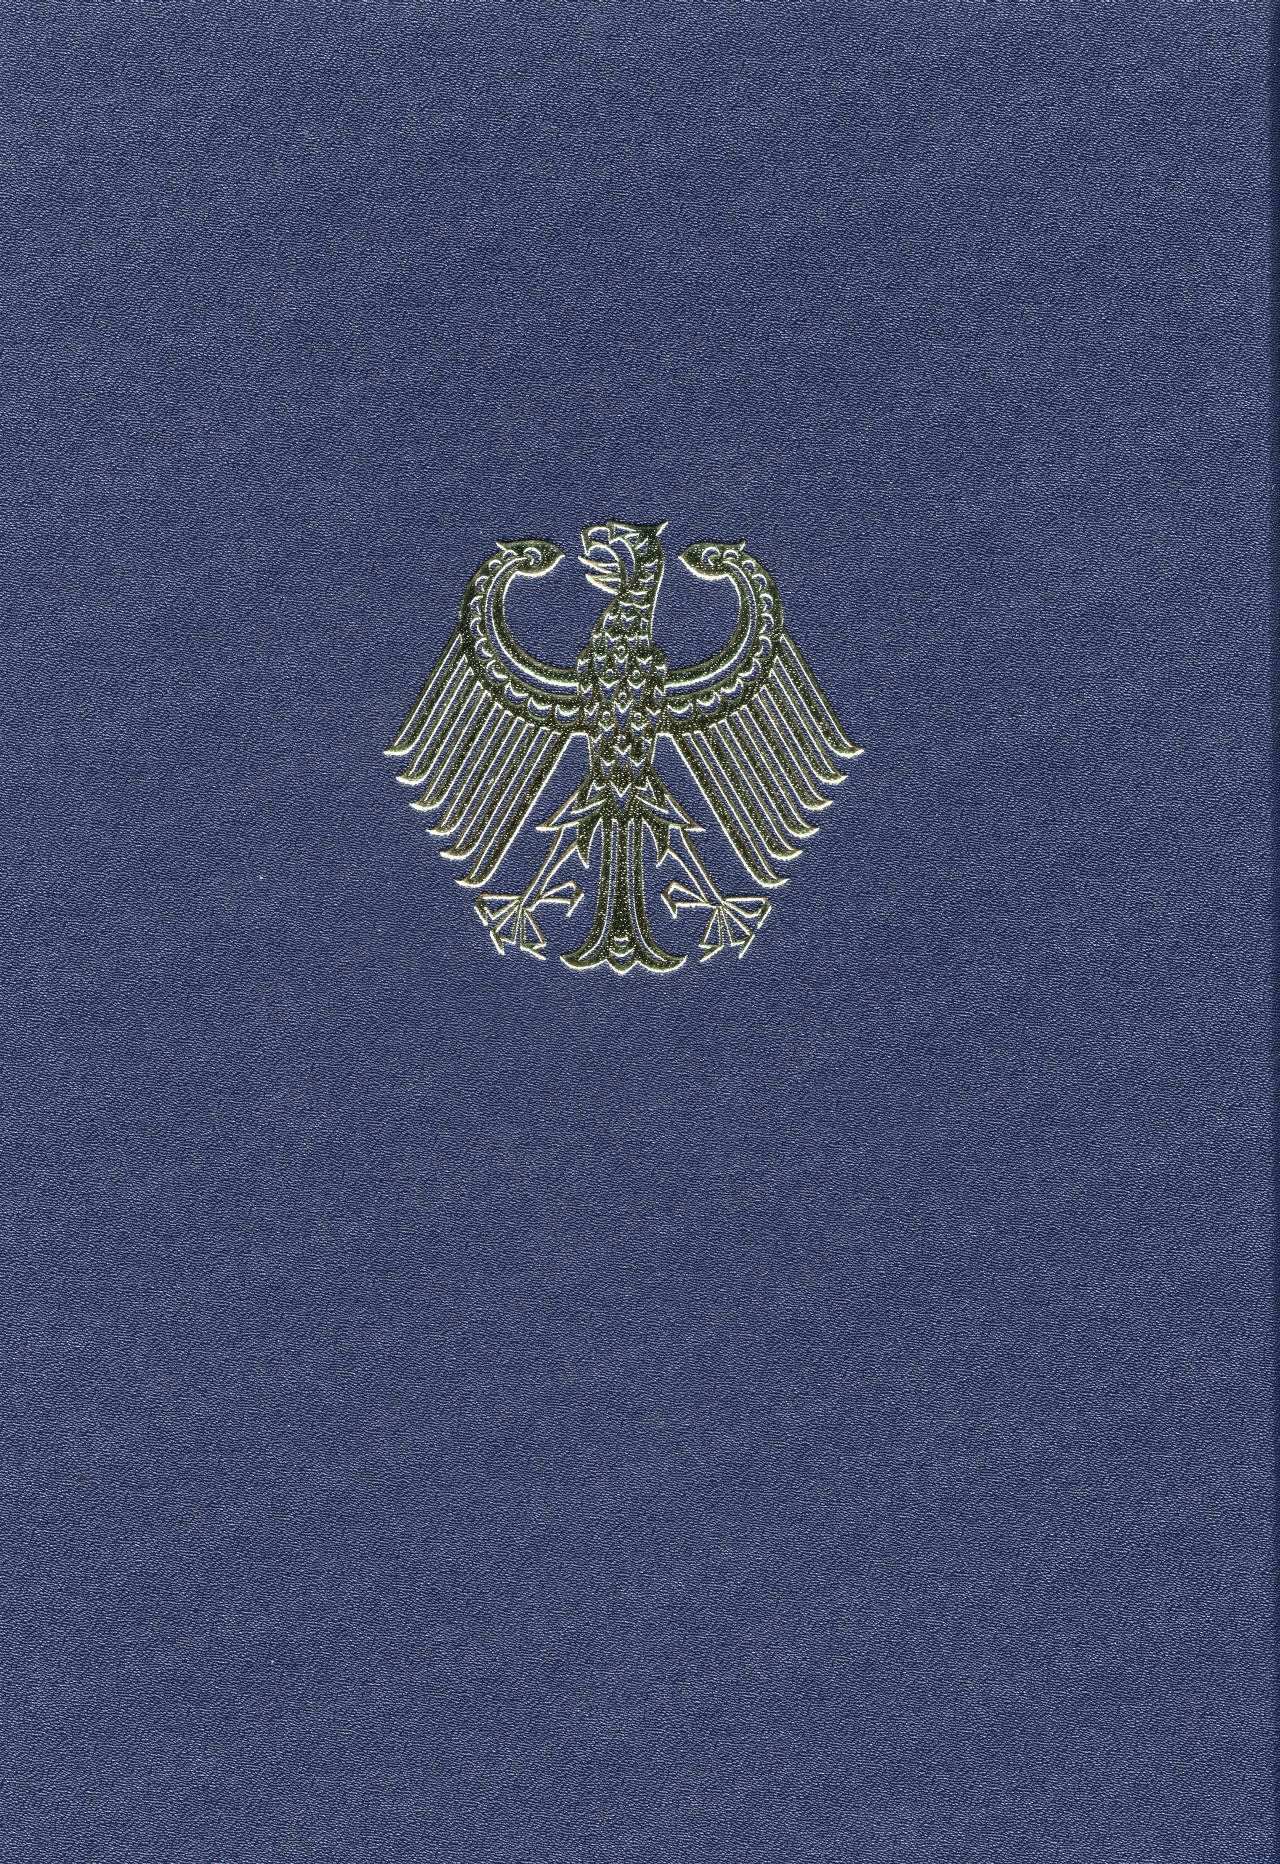 In einer dunkelblauen Mappe mit dem Bundesadler (Goldprägung) auf der Vorderseite befindet sich der Vertrag zwischen der Bundesrepublik Deutschland und der Deutschen Demokratischen Republik über die Herstellung der Einheit Deutschlands.